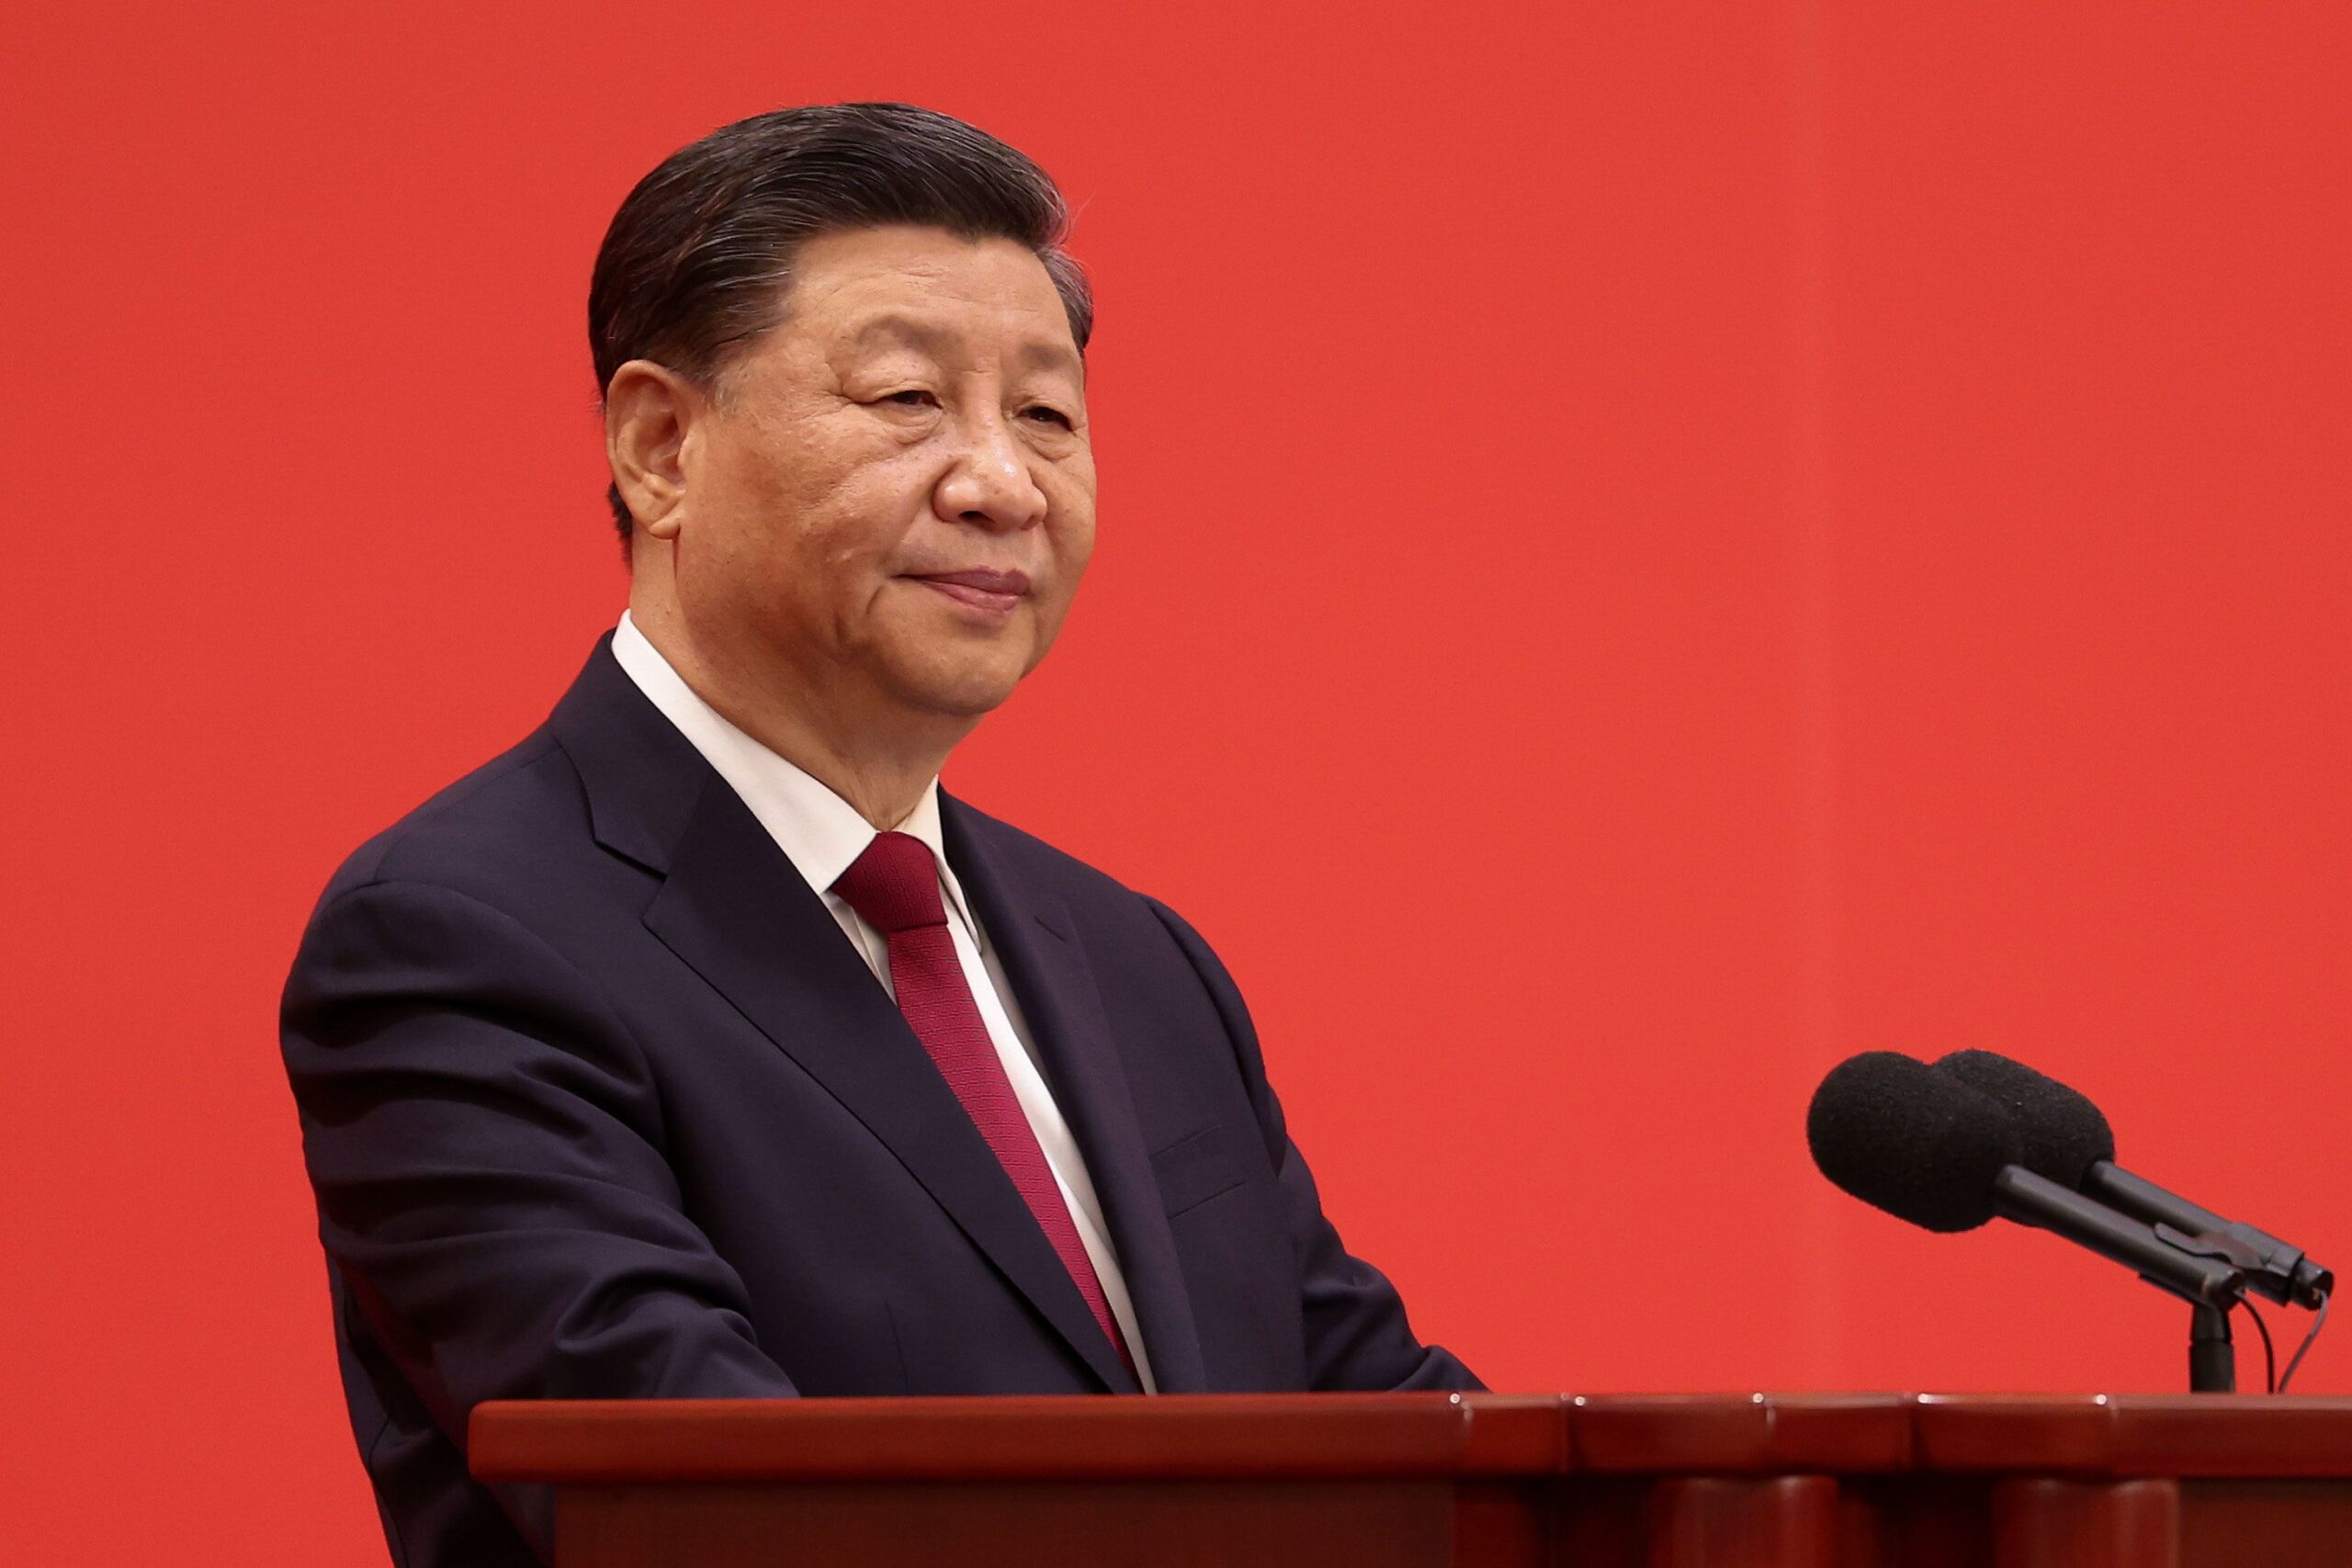 Xi Jinping chiede a Putin di costruire  ordine mondiale stabile e giusto,